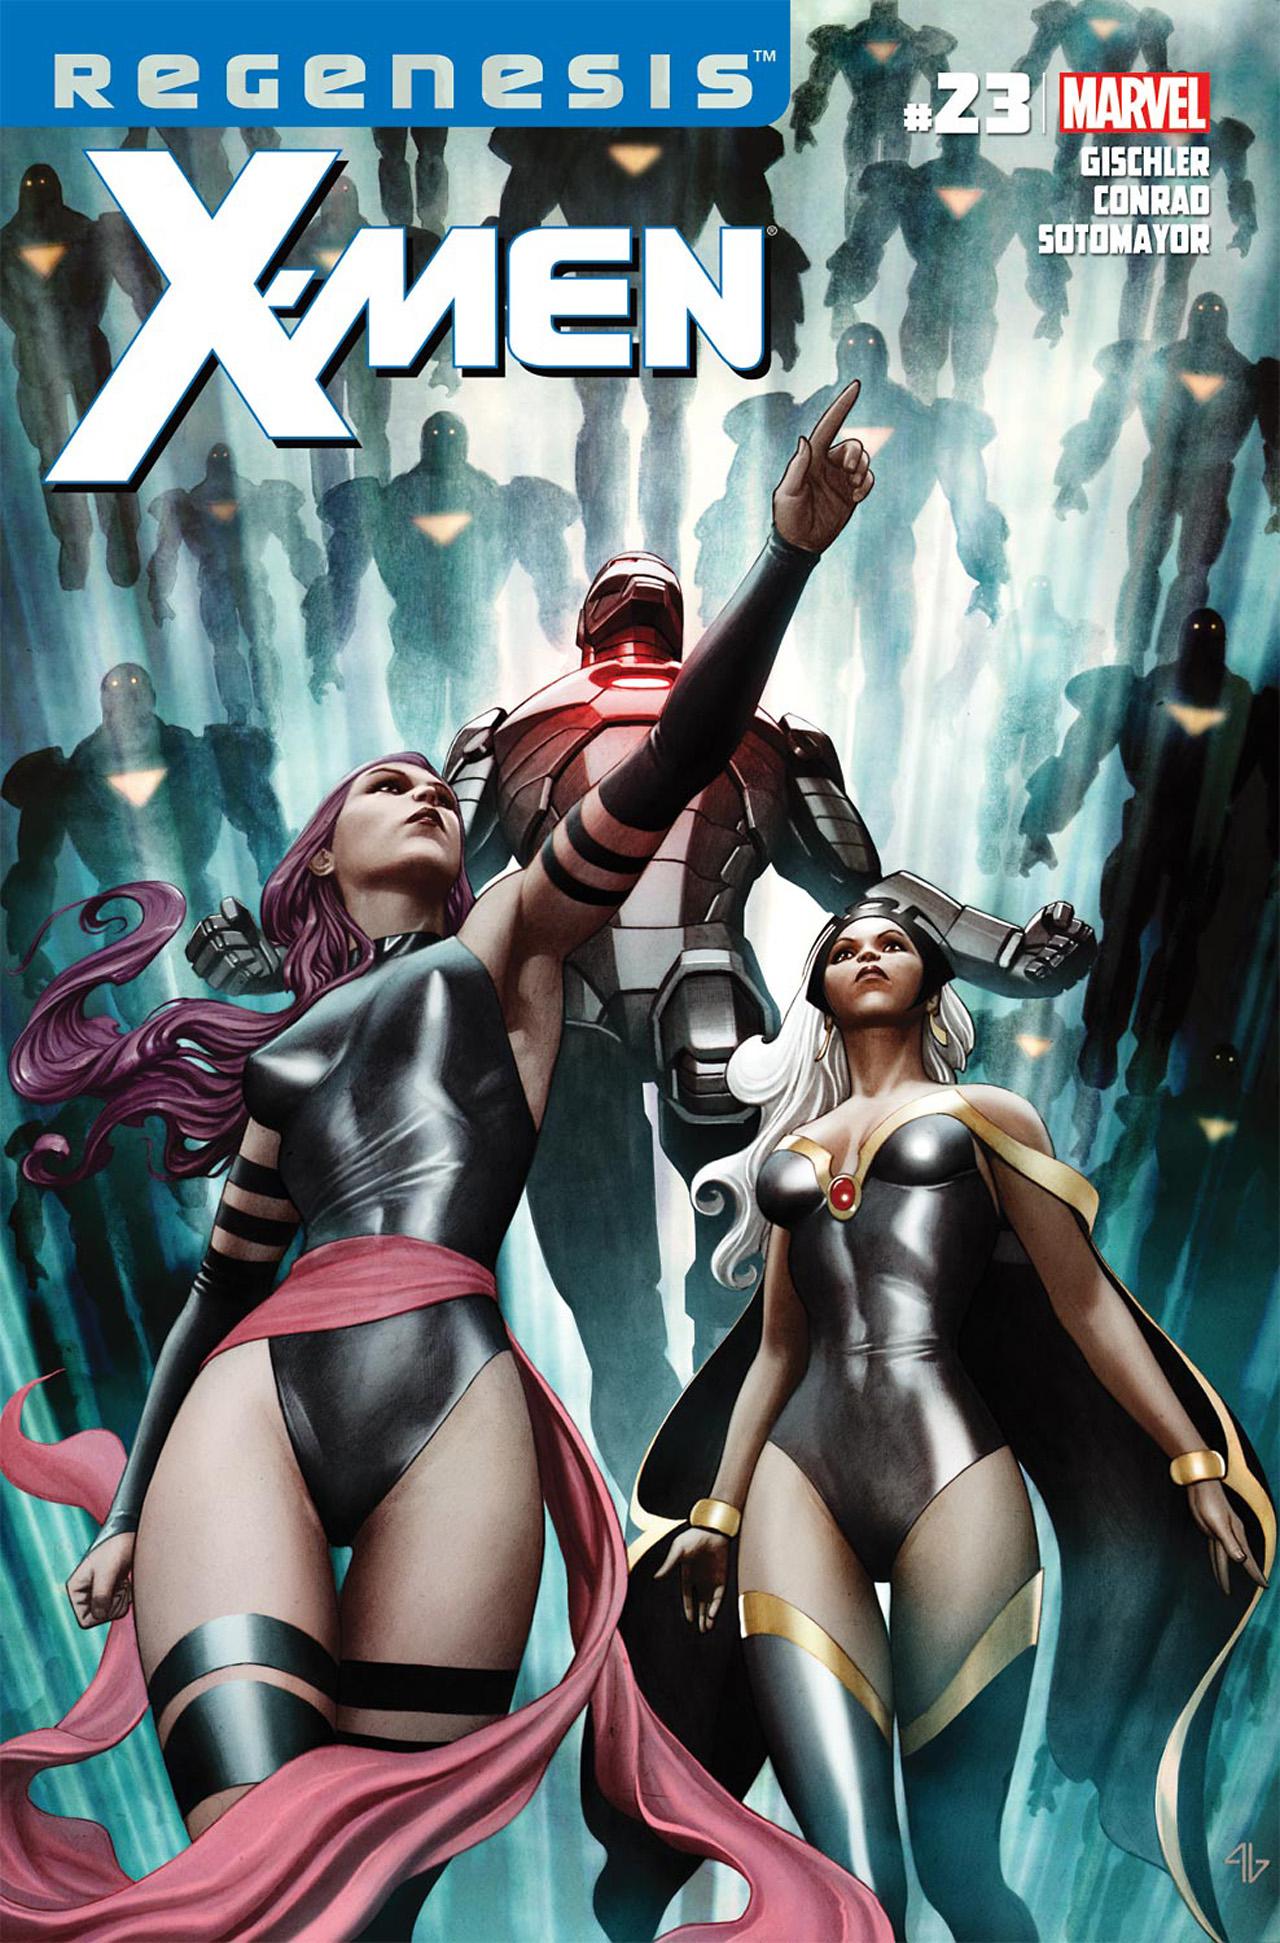 X-Men Vol. 3 #23